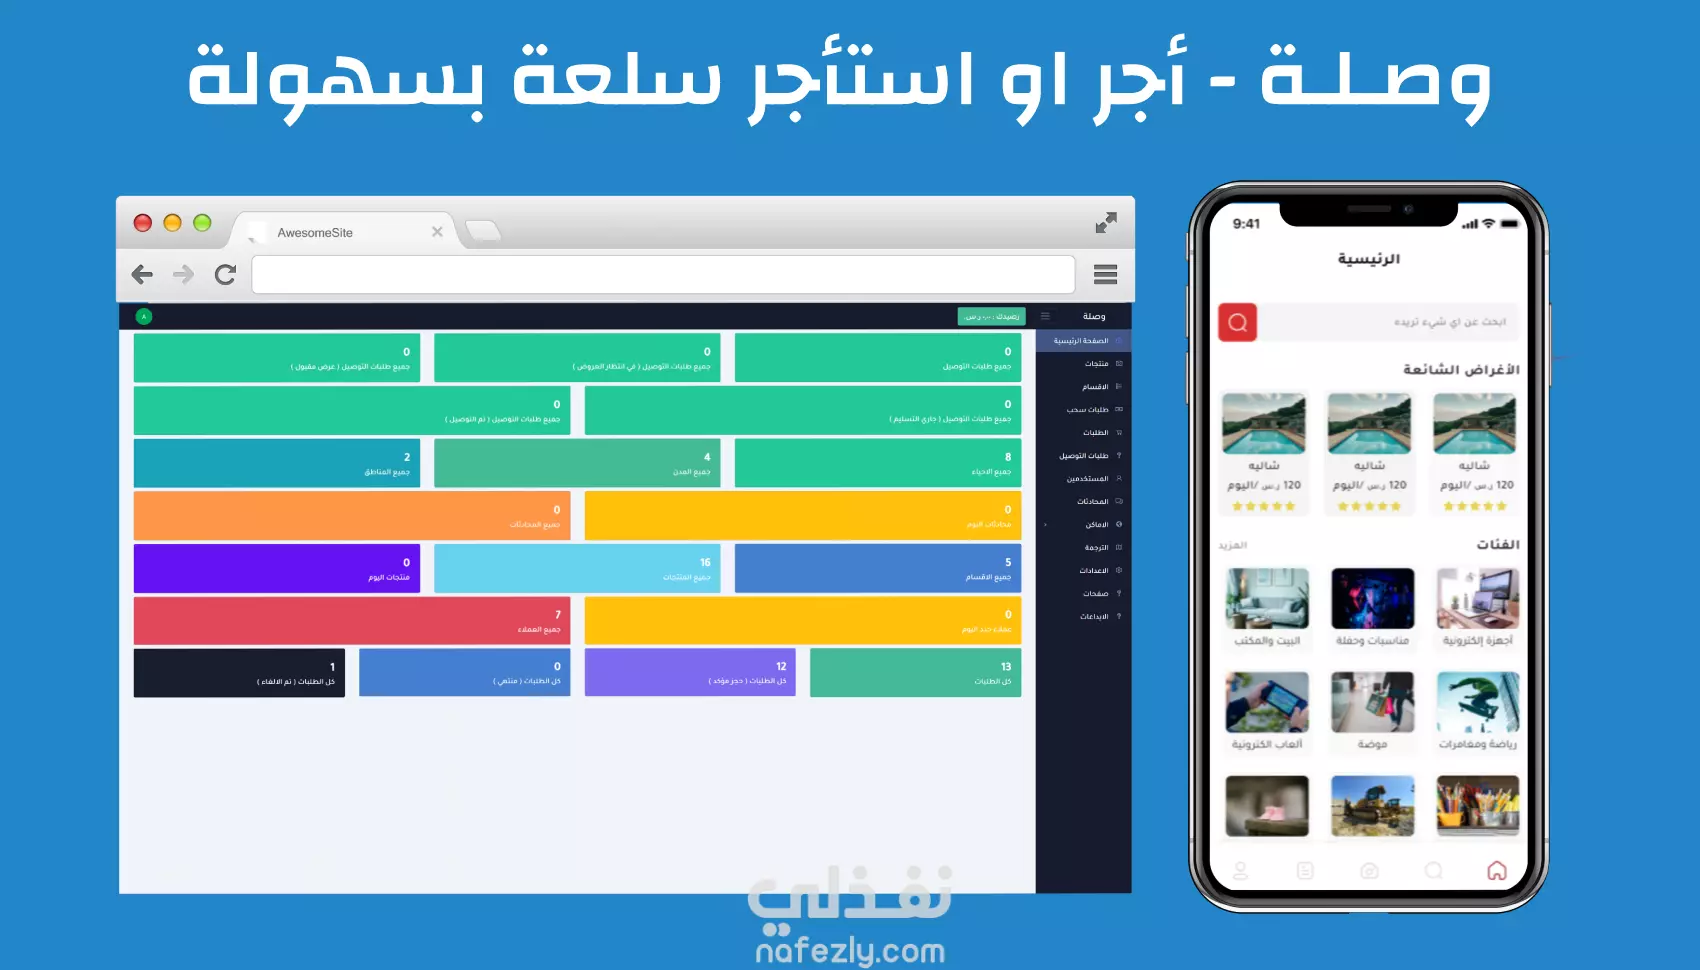 وصلة - أول تطبيق سعودي للتأجير و استئجار المنتجات و النقل